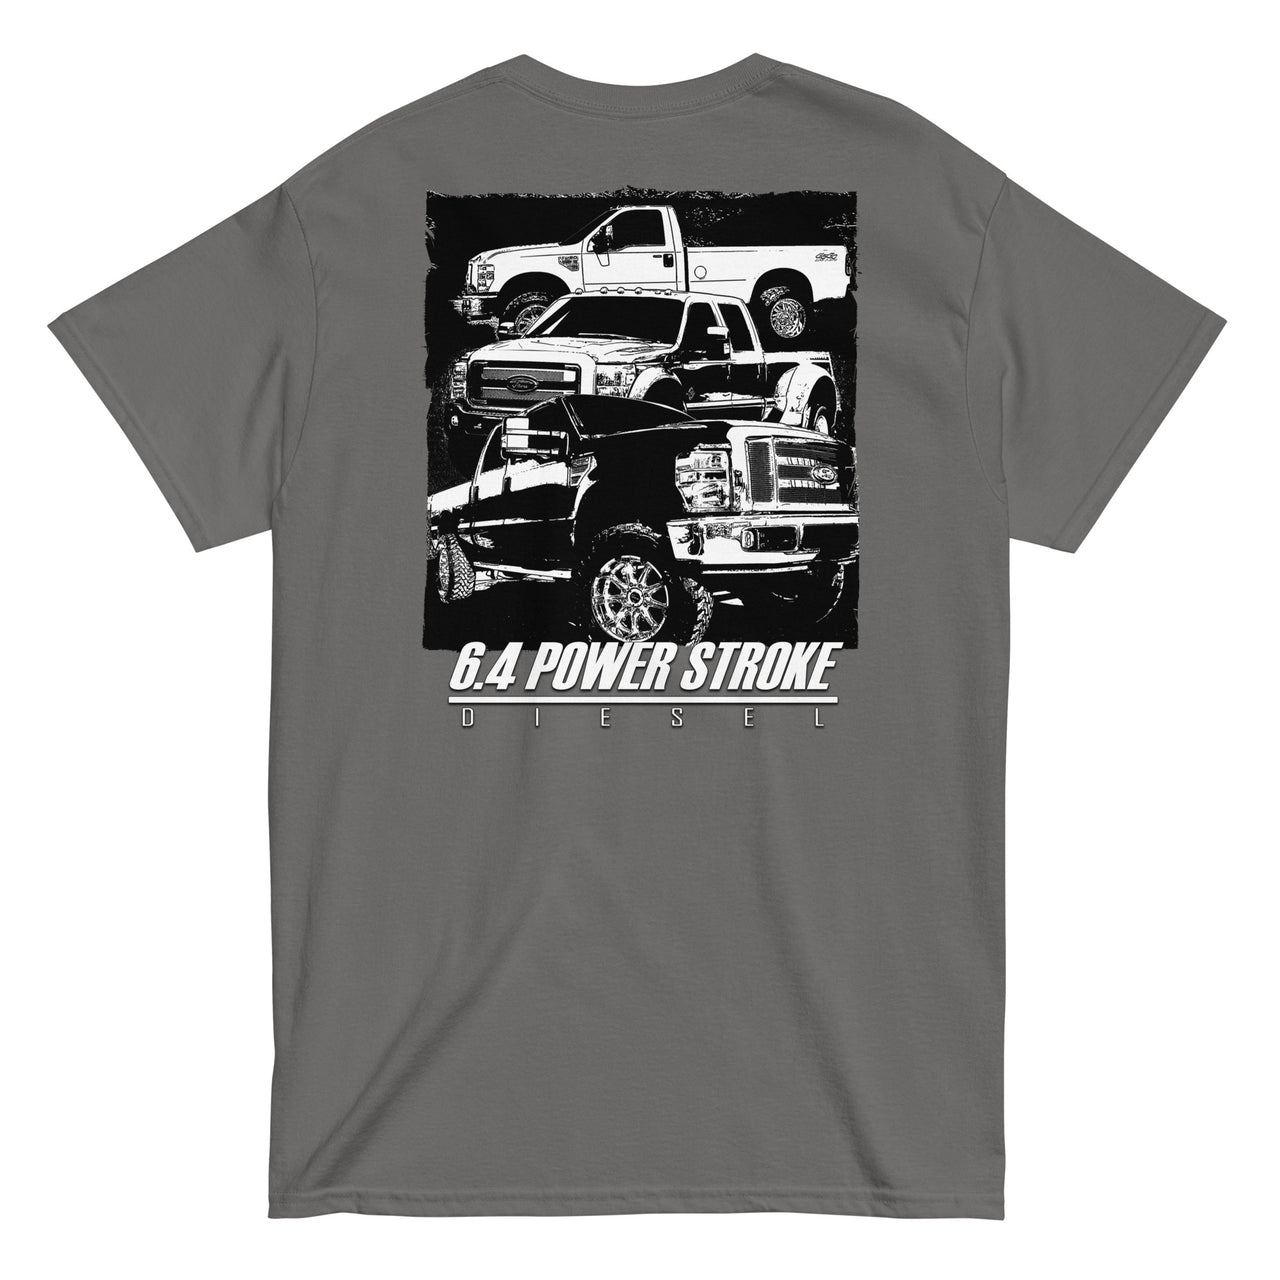 6.4 Power Stroke Trucks t-shirt in grey